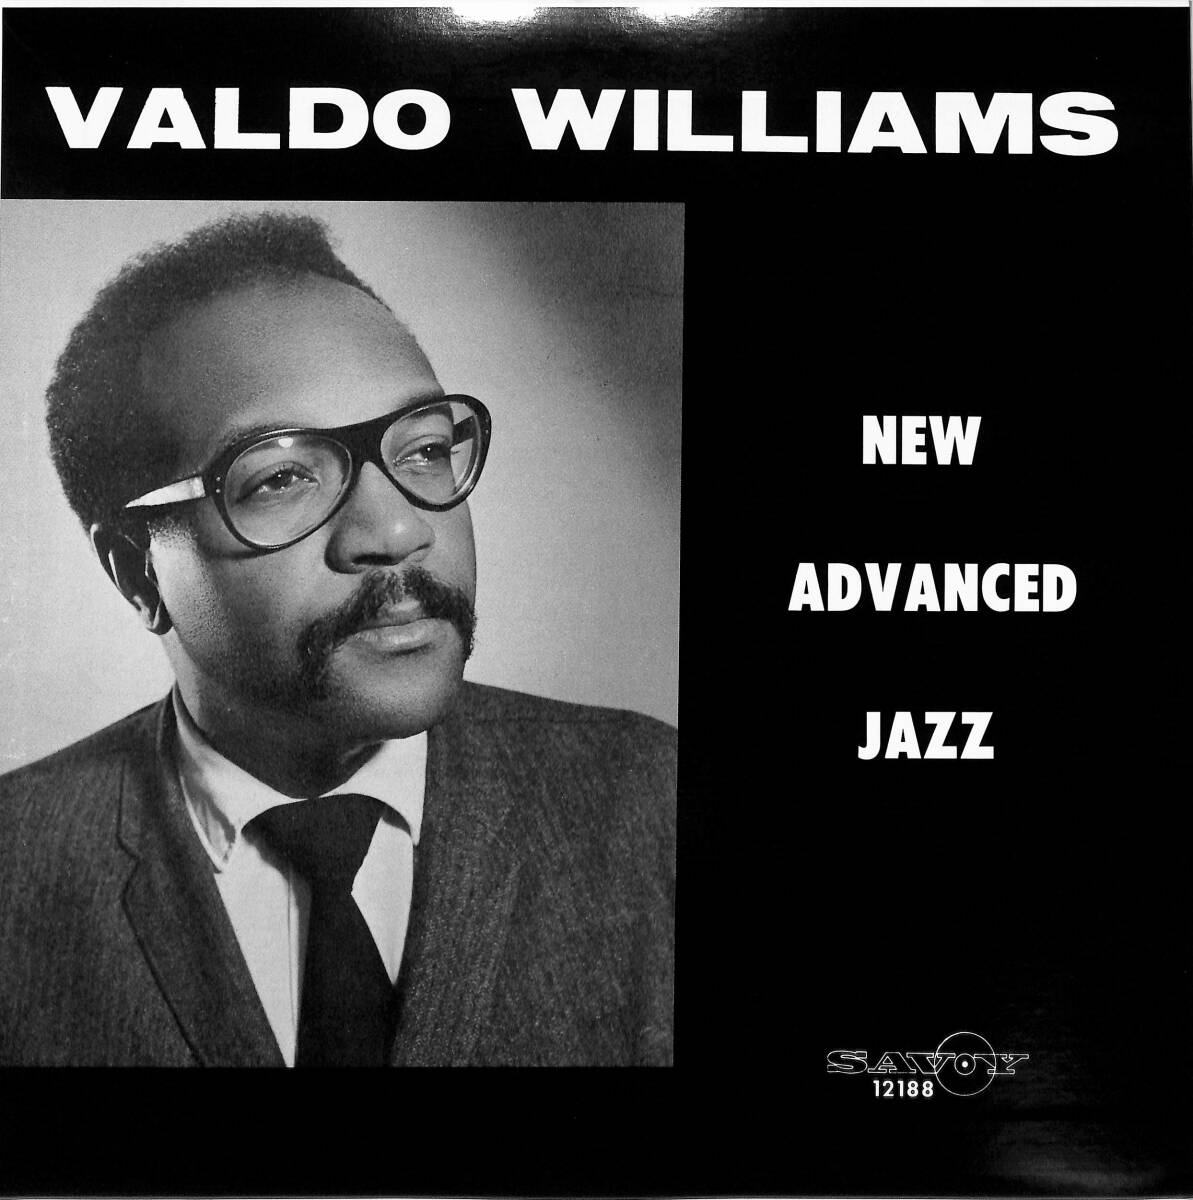 A00590853/LP/バルド・ウィリアムズ「New Advanced Jazz」の画像1